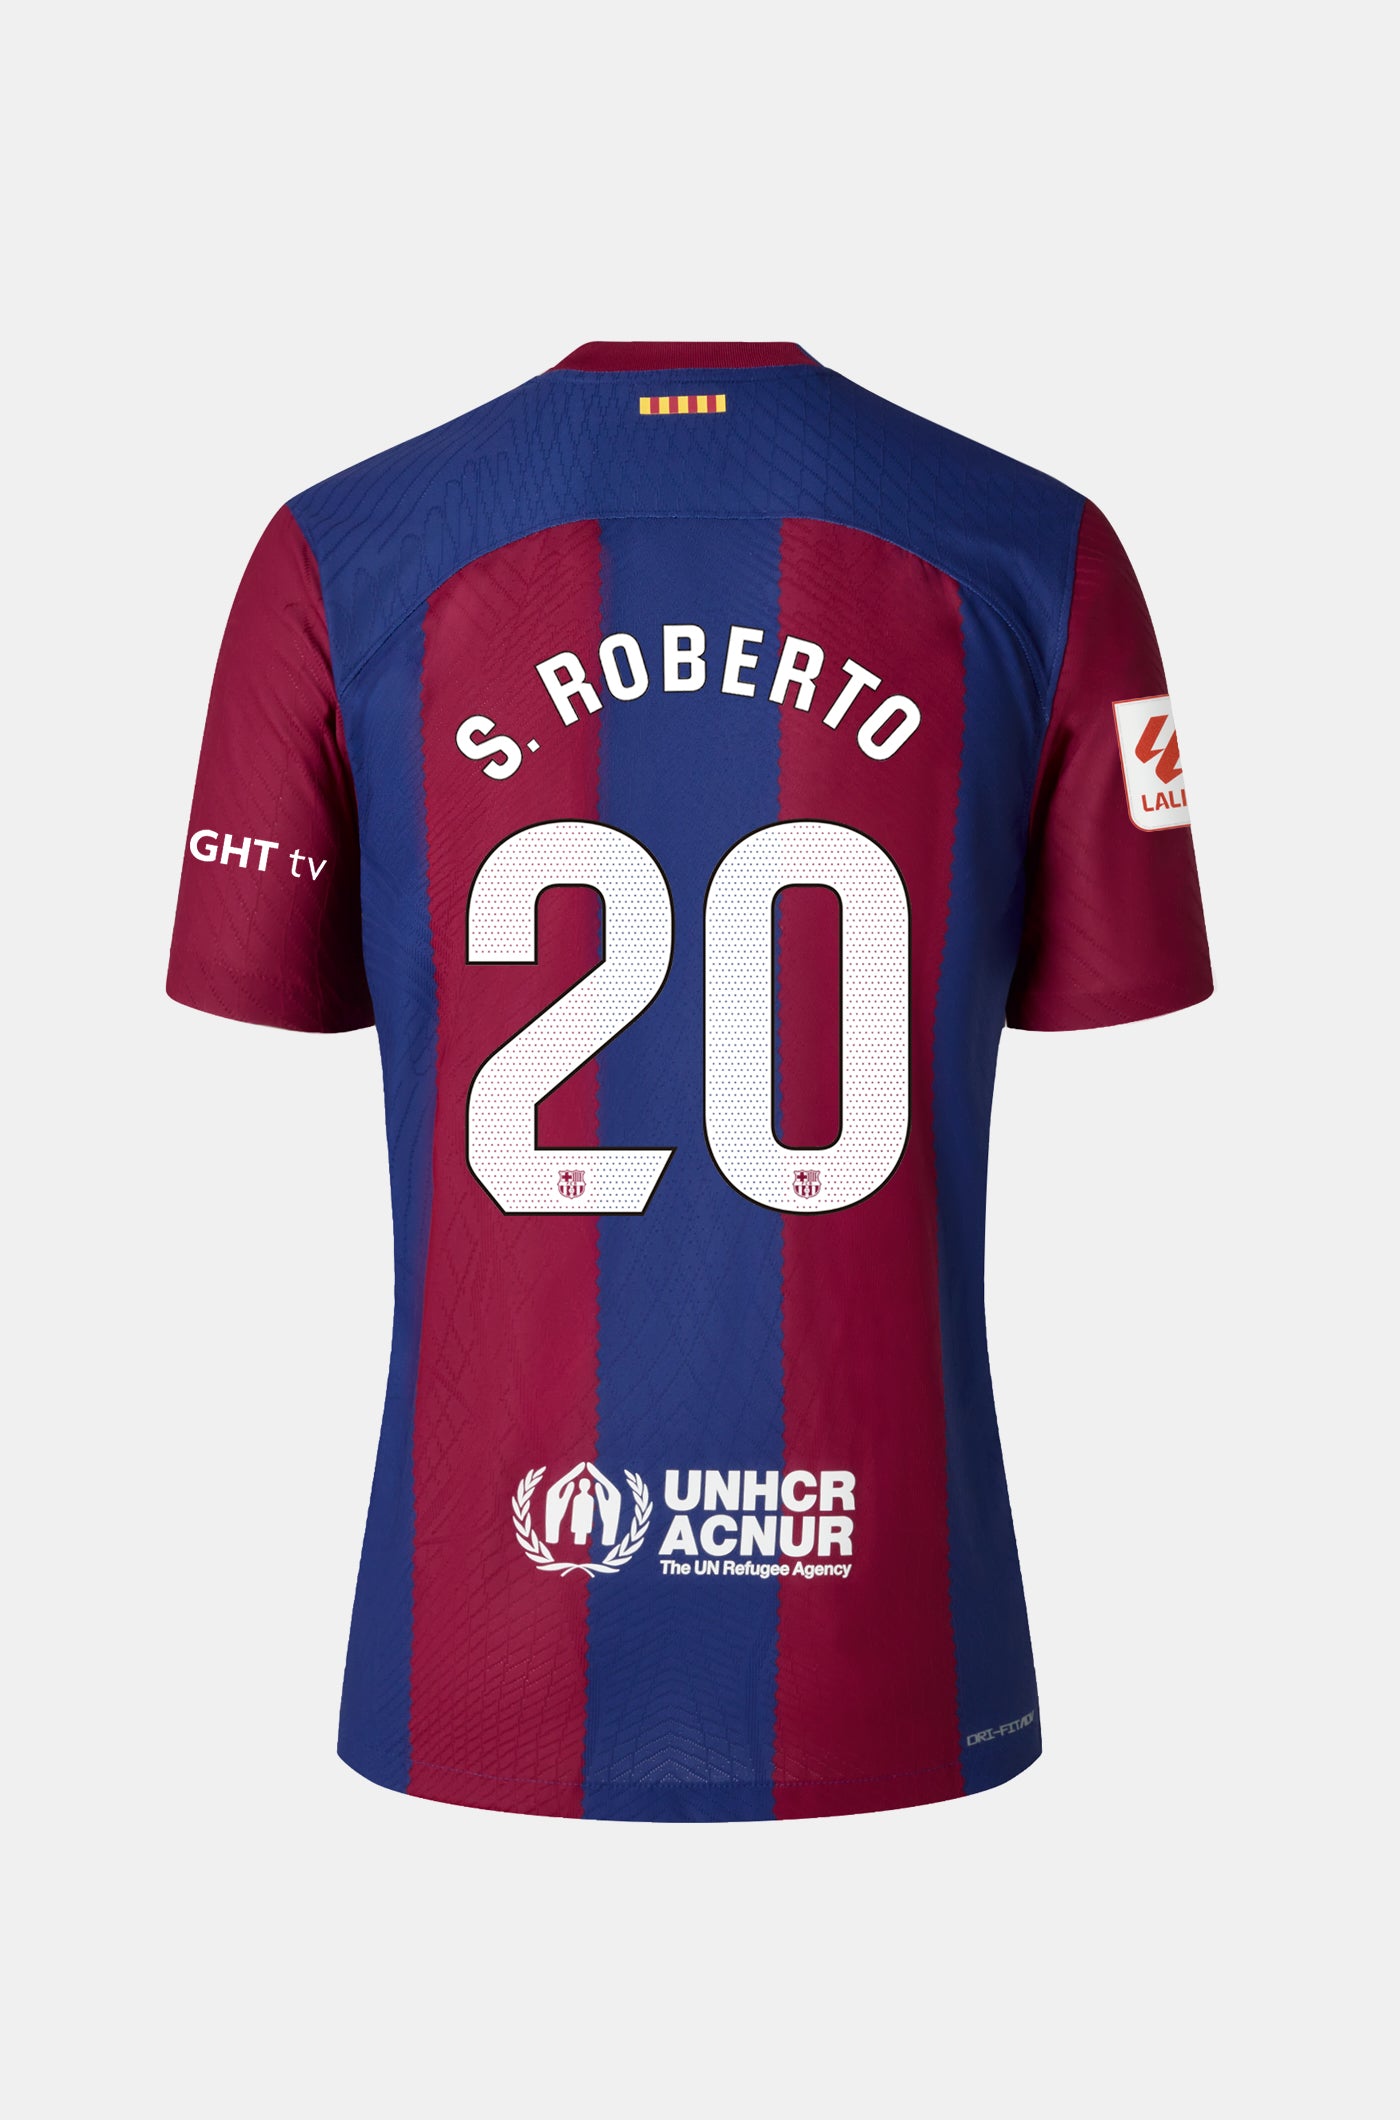 LFP  Samarreta primer equipament FC Barcelona 23/24 - Júnior - S. ROBERTO  